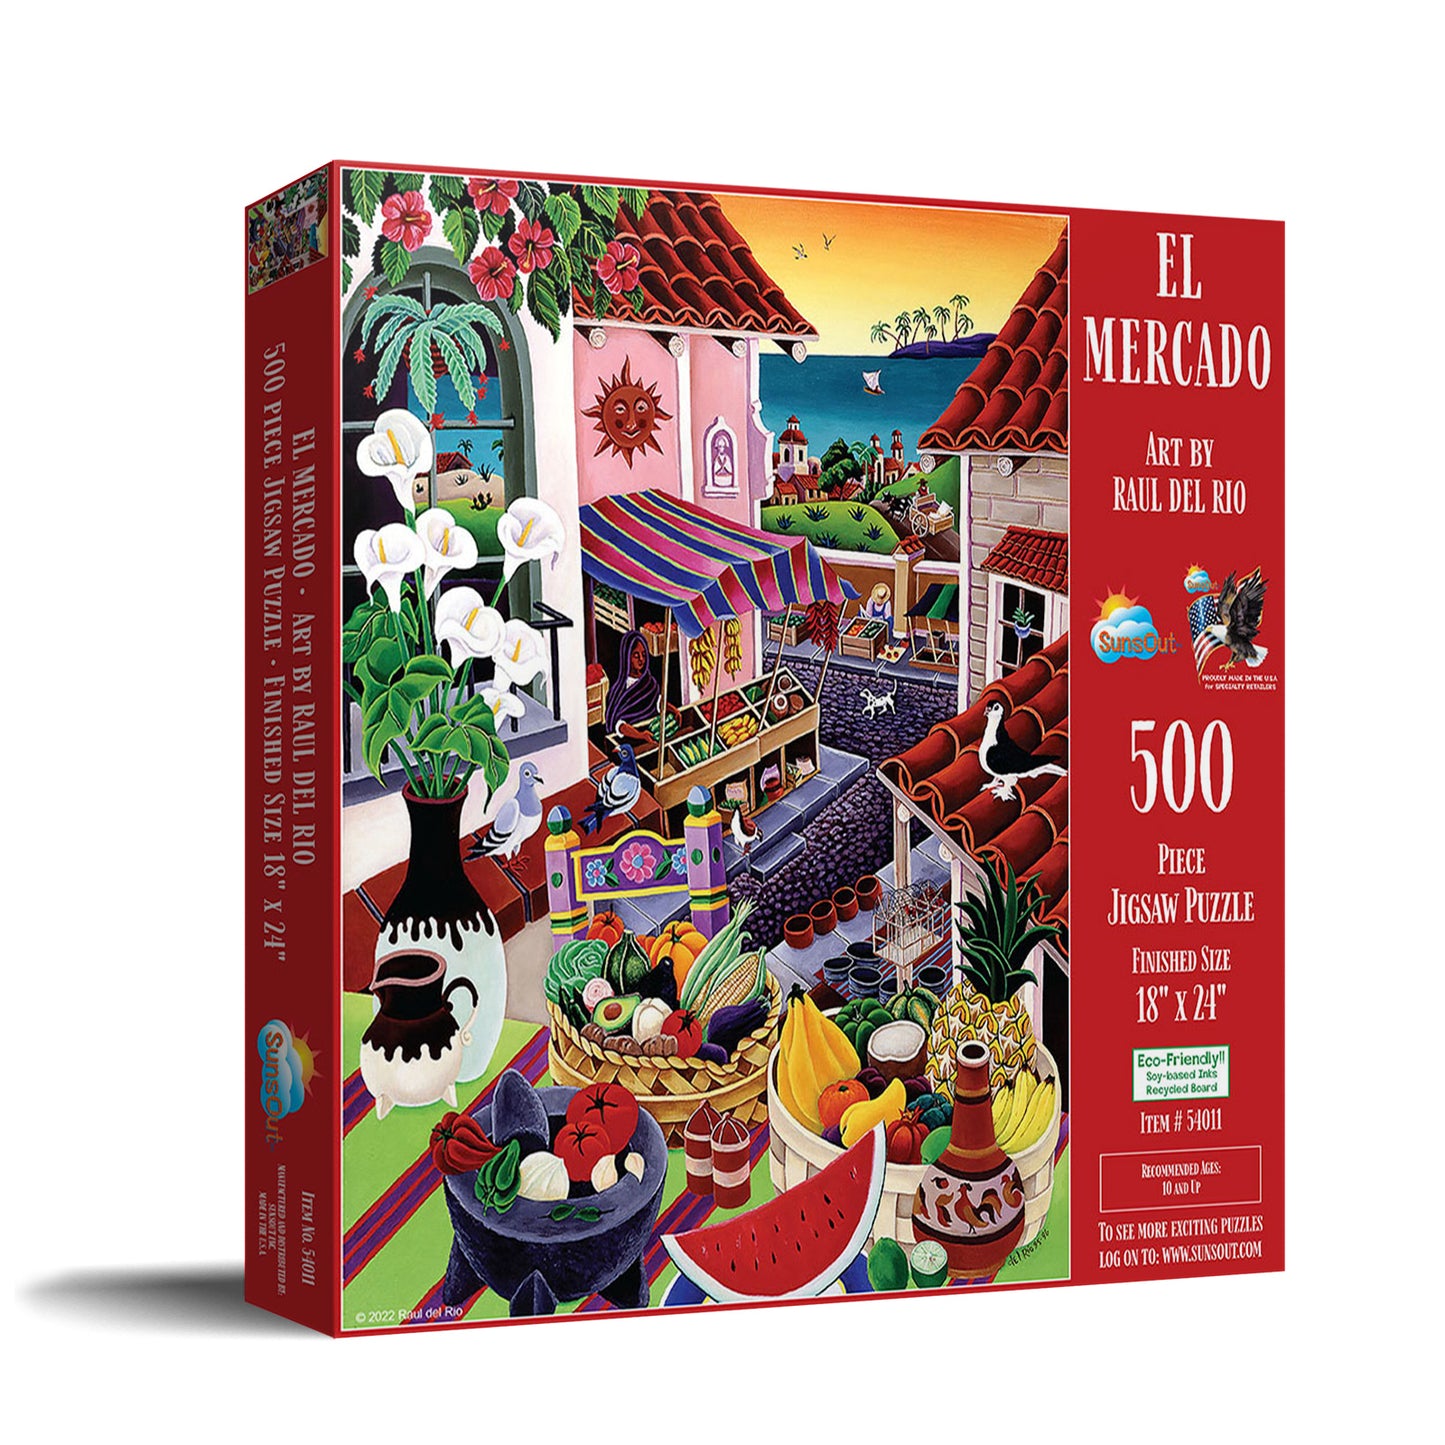 El Mercado - 500 Piece Jigsaw Puzzle